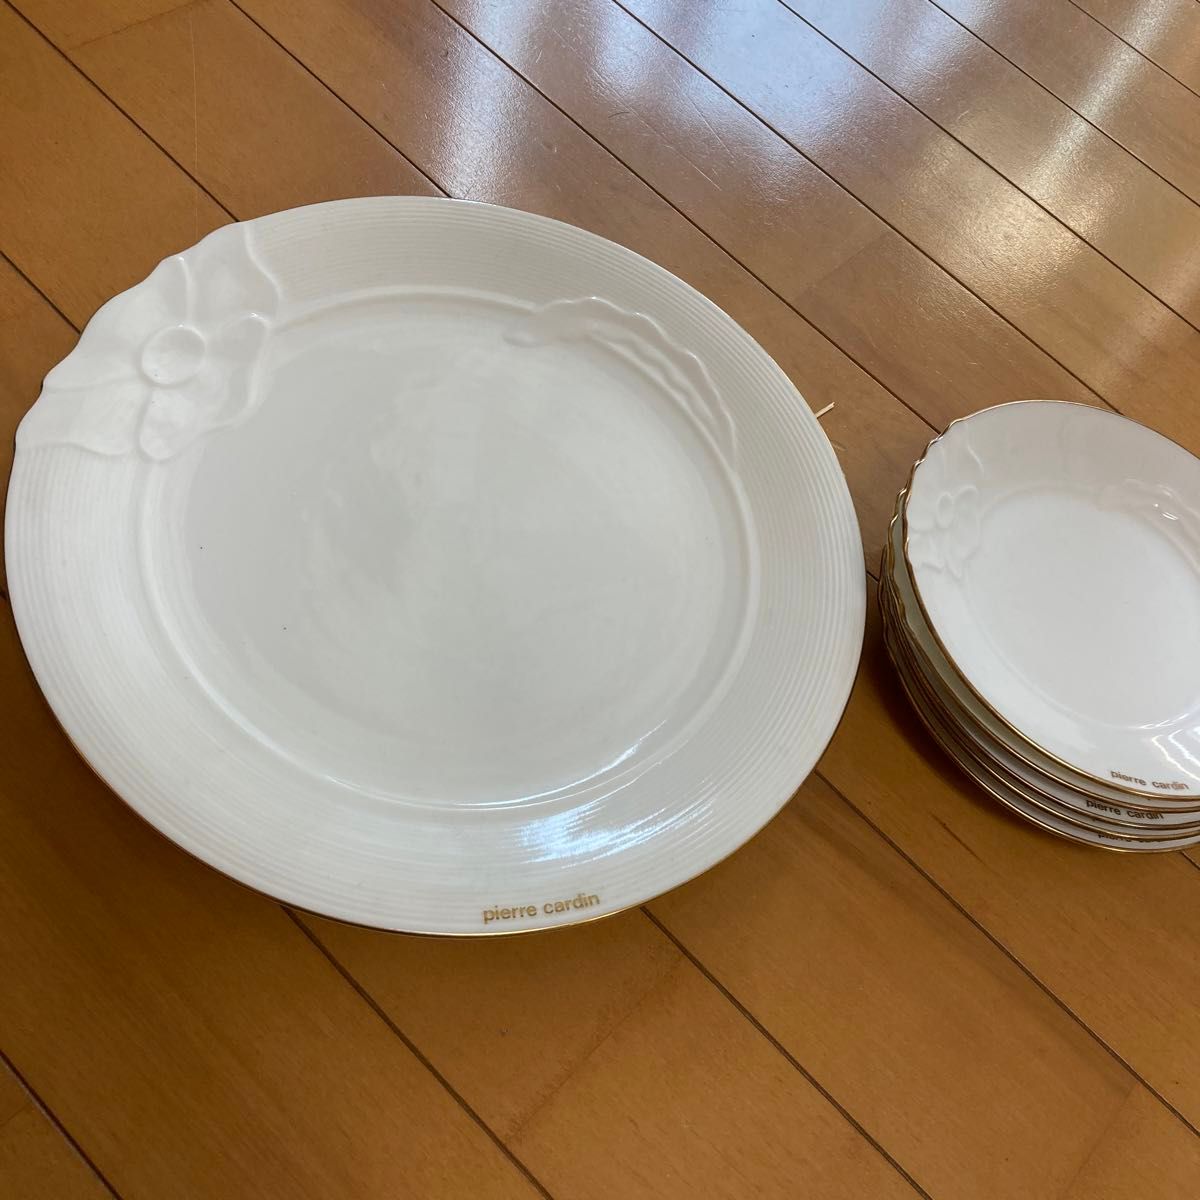 Pierre cardin 皿セット ホワイト